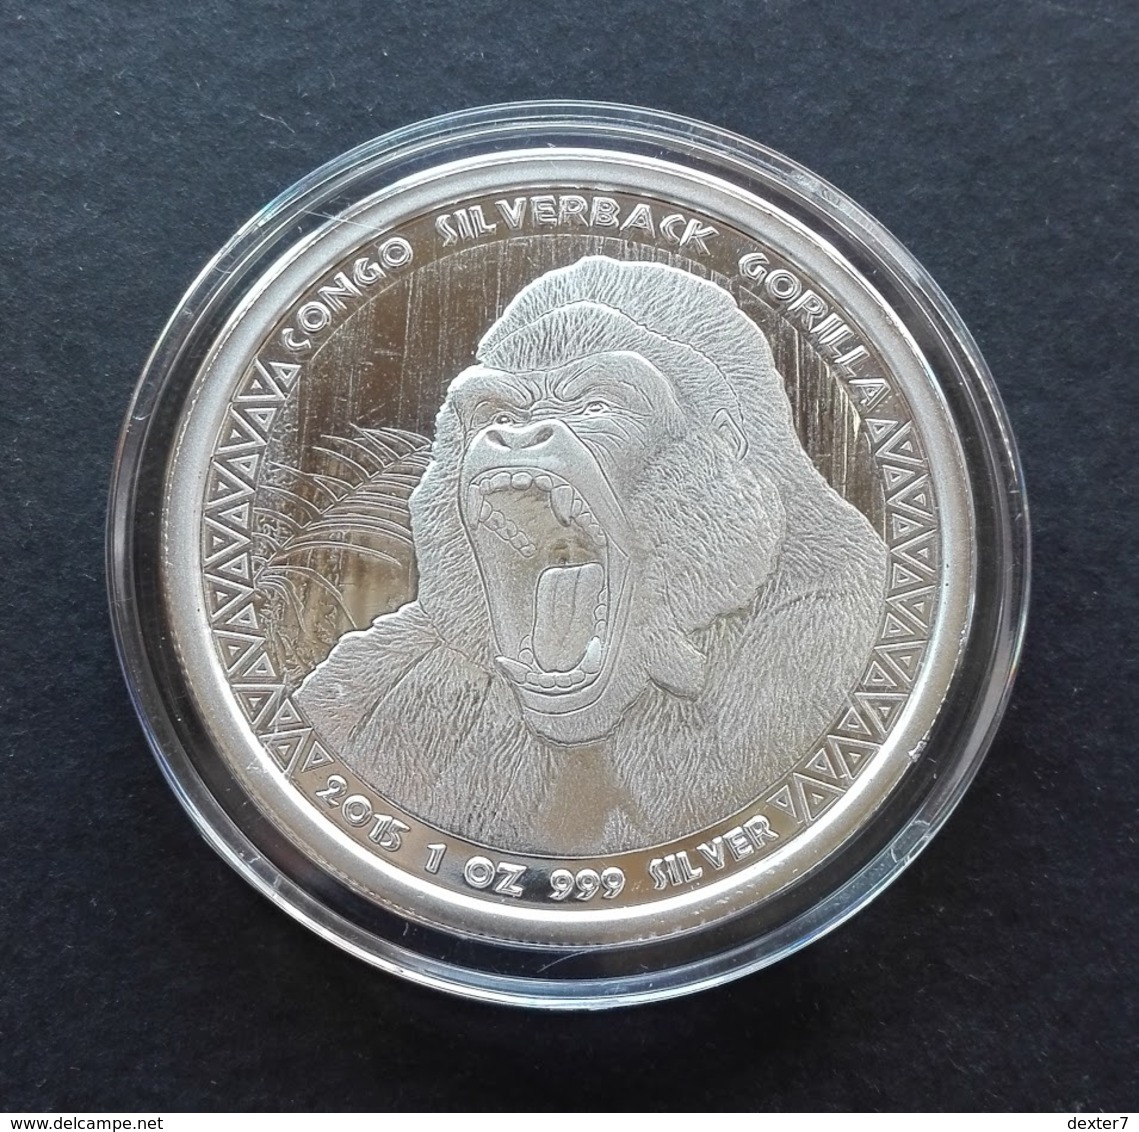 Congo, Gorilla 1 Oz 2015 Silver 999 Pure - 1 Oncia Argento Puro Bullion Scottsdale Mint - Congo (République Démocratique 1998)